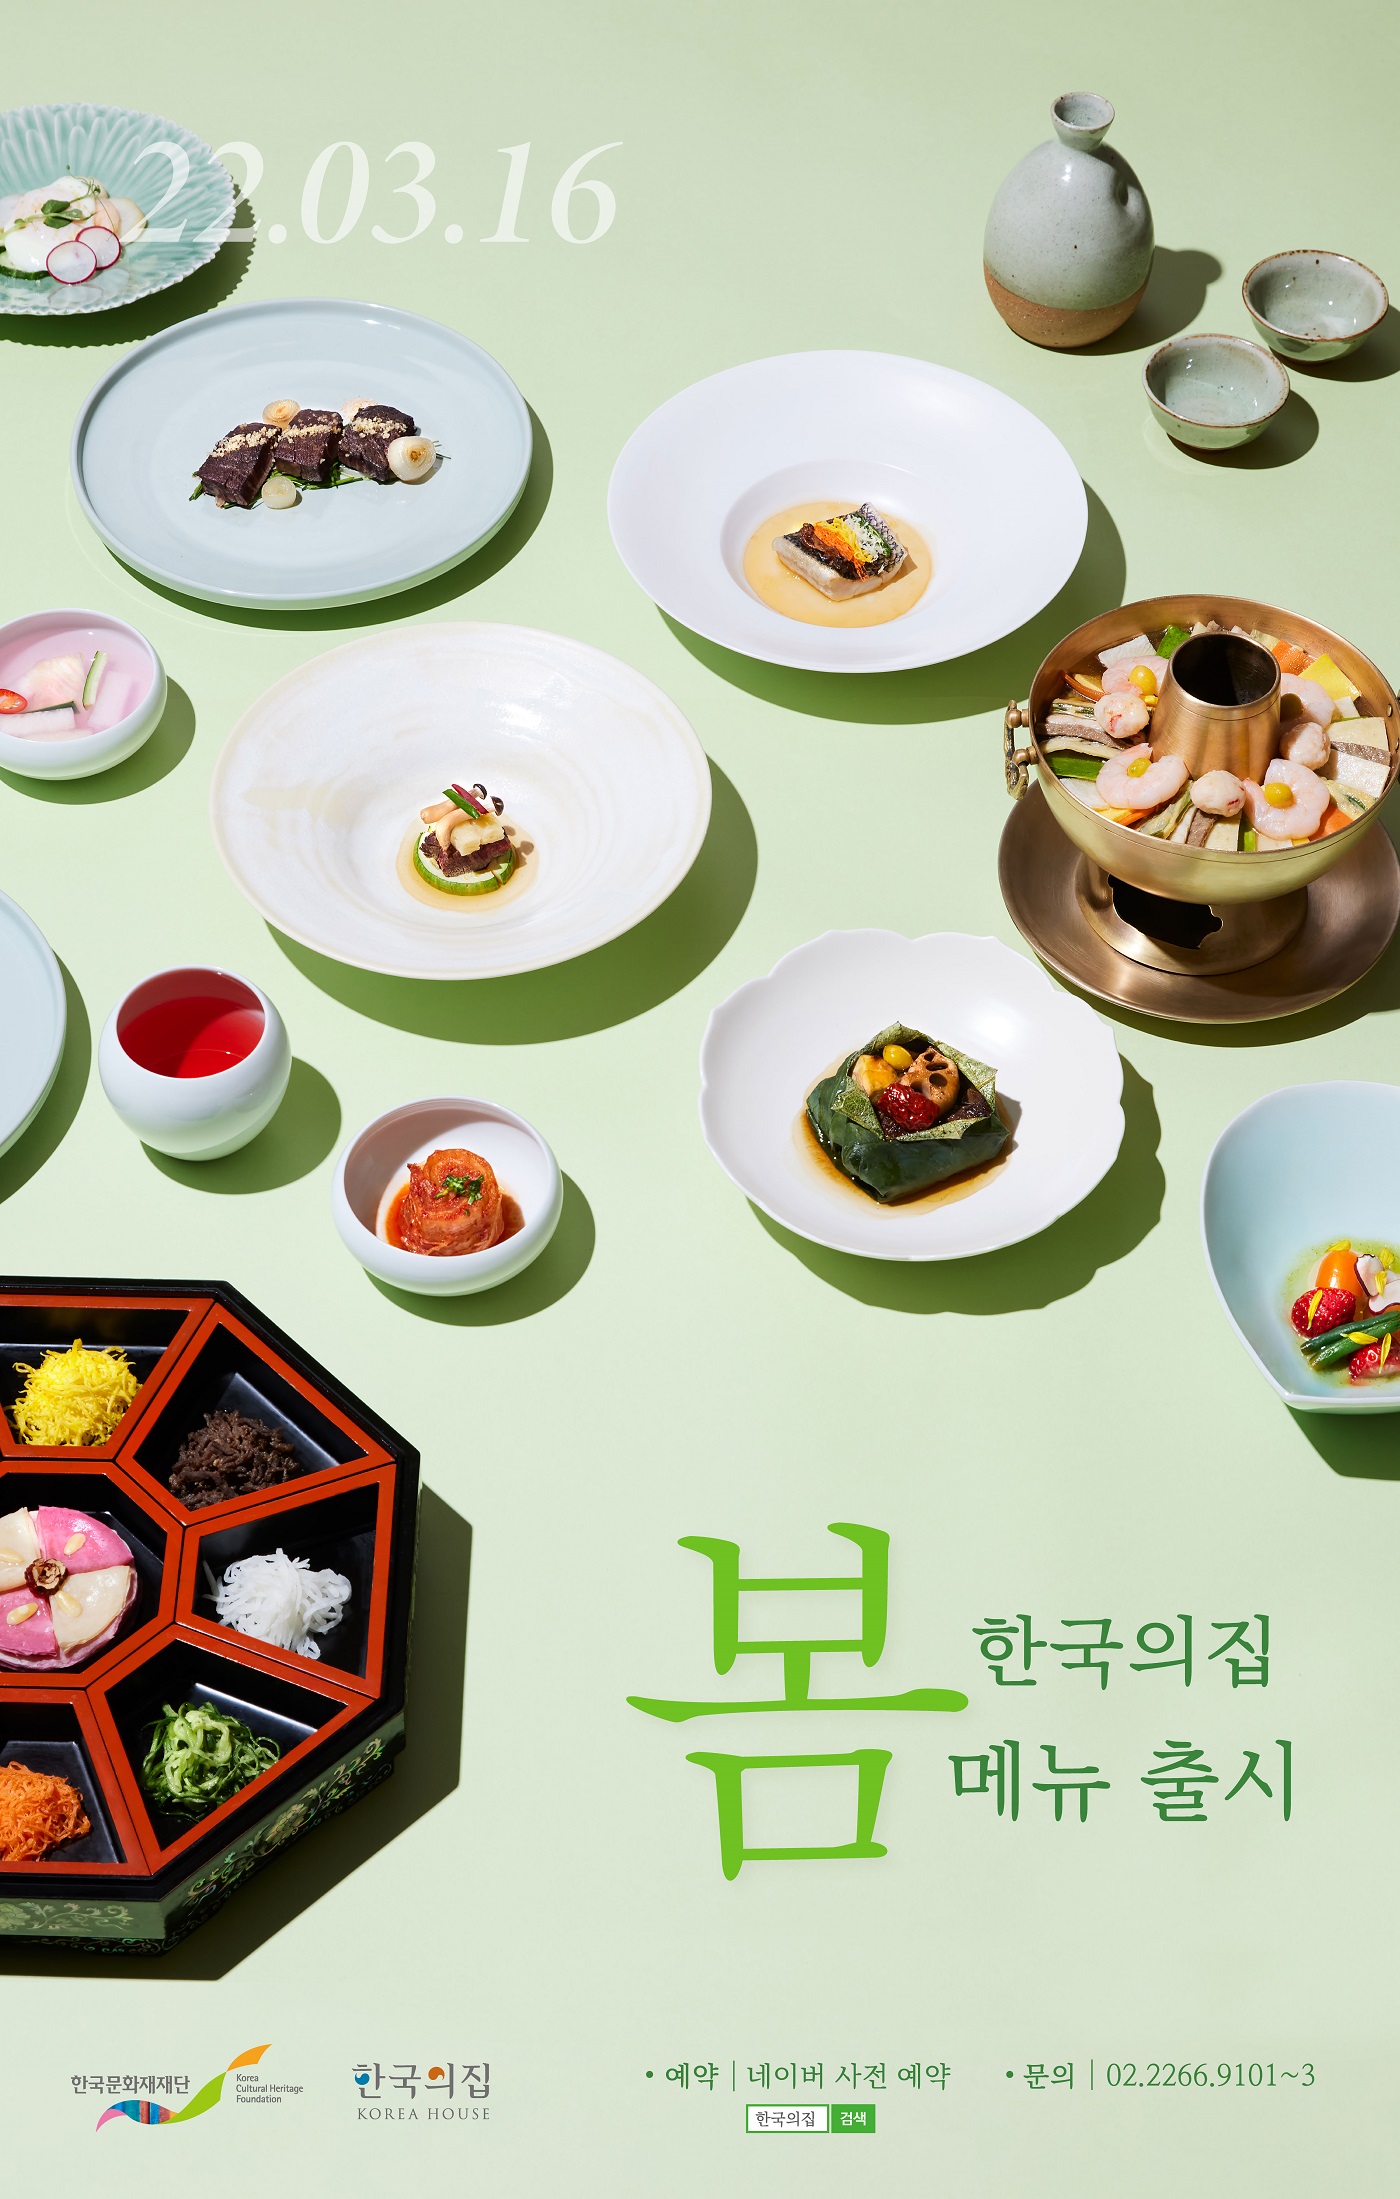 한국의집 봄메뉴 포스터